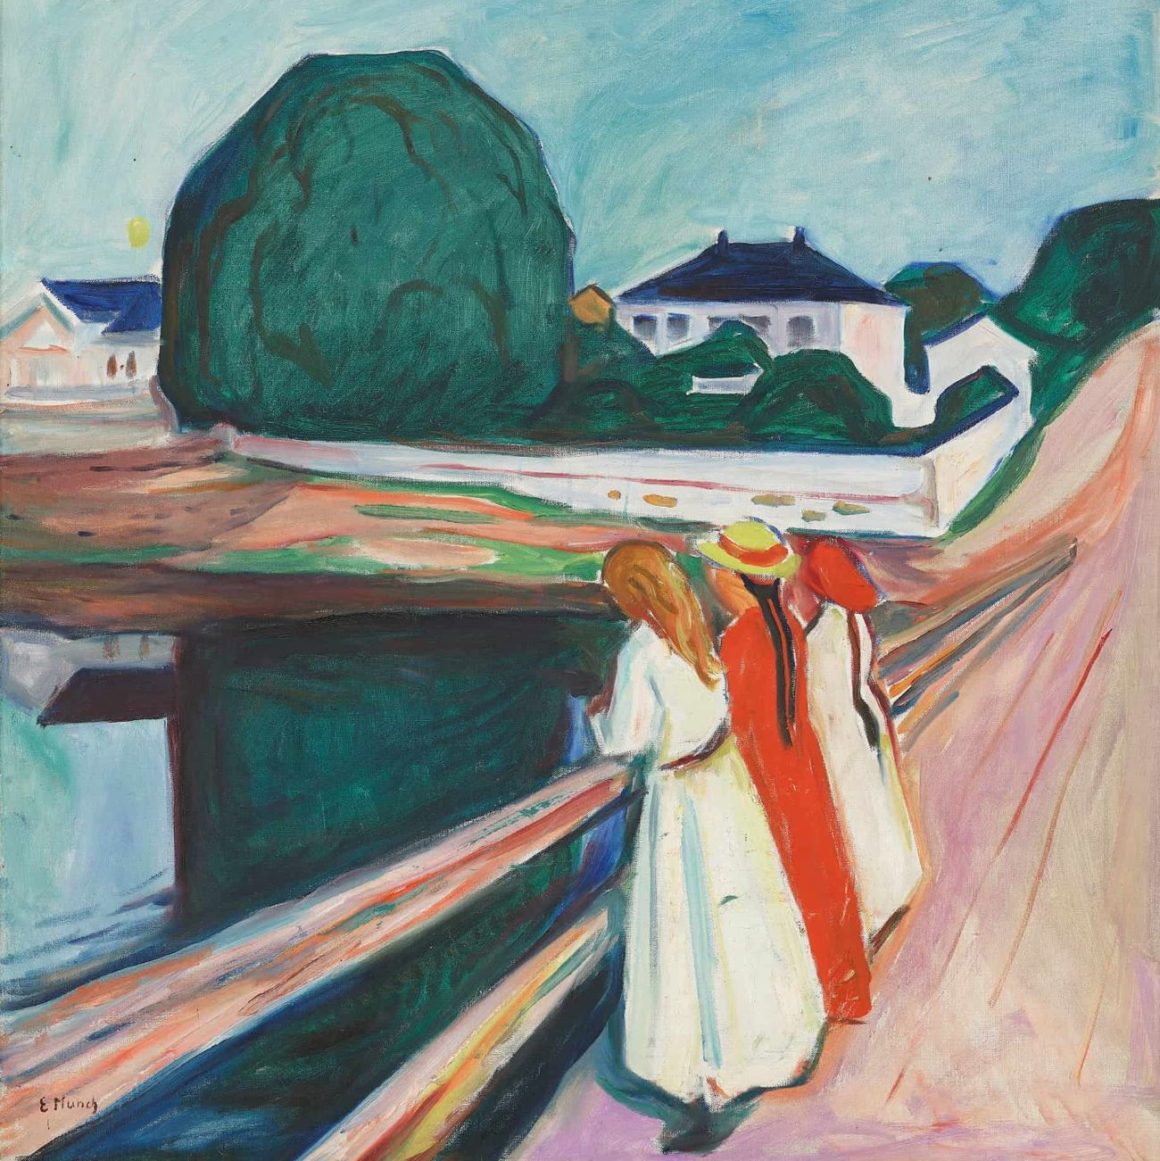 L’exposition Munch à Paris : l’œuvre dans sa globalité